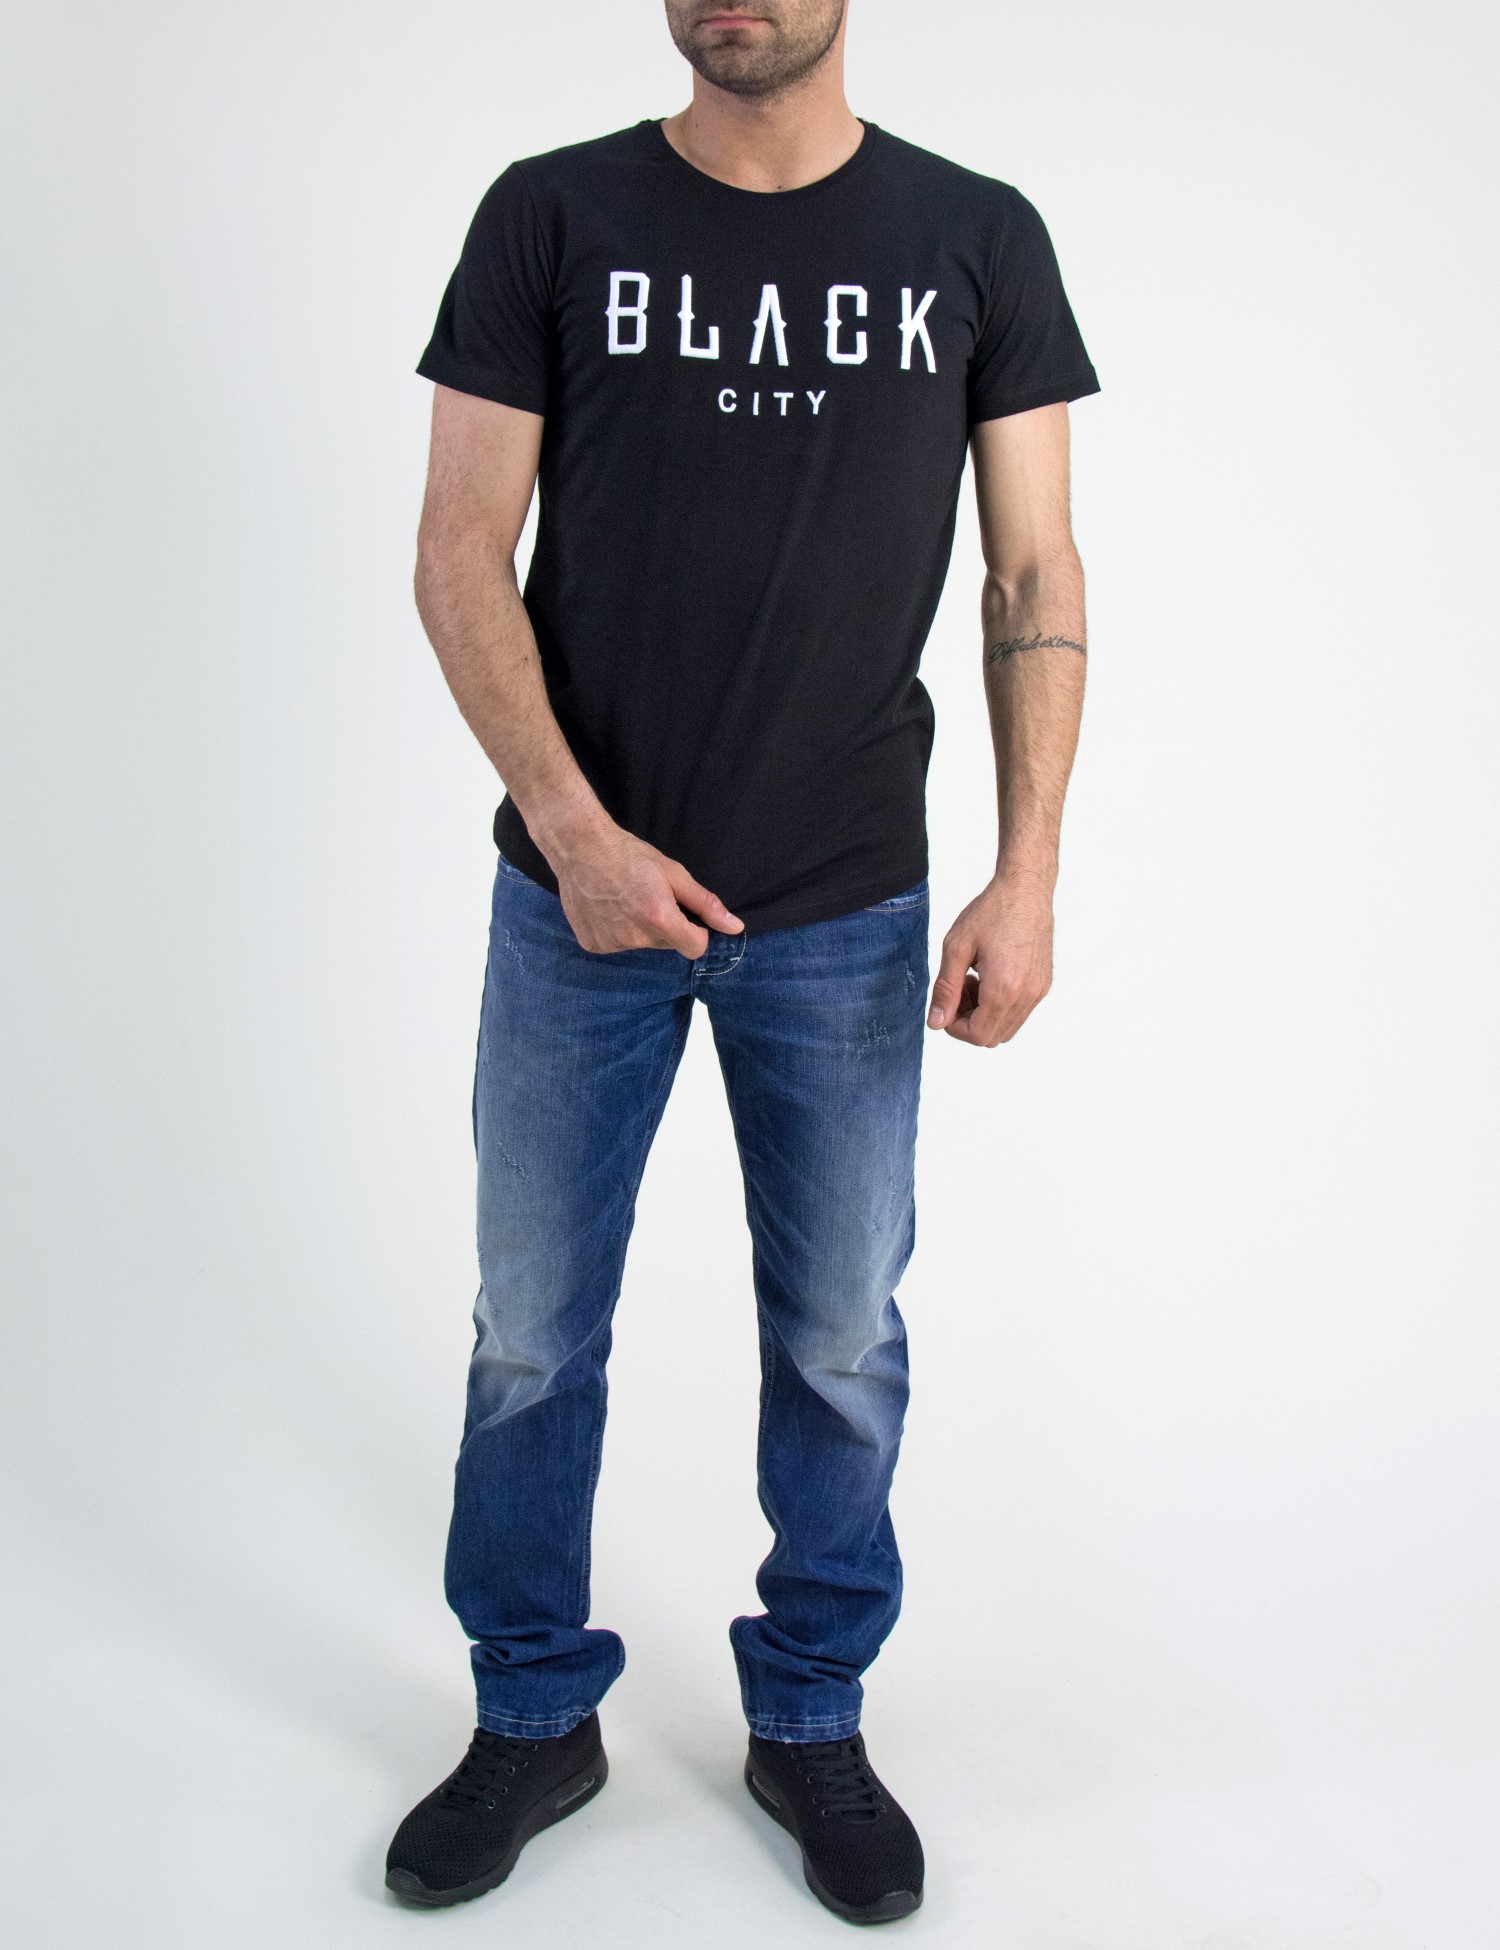 Ανδρική κοντομάνικη μπλούζα Madmext μαύρη κέντημα 2492